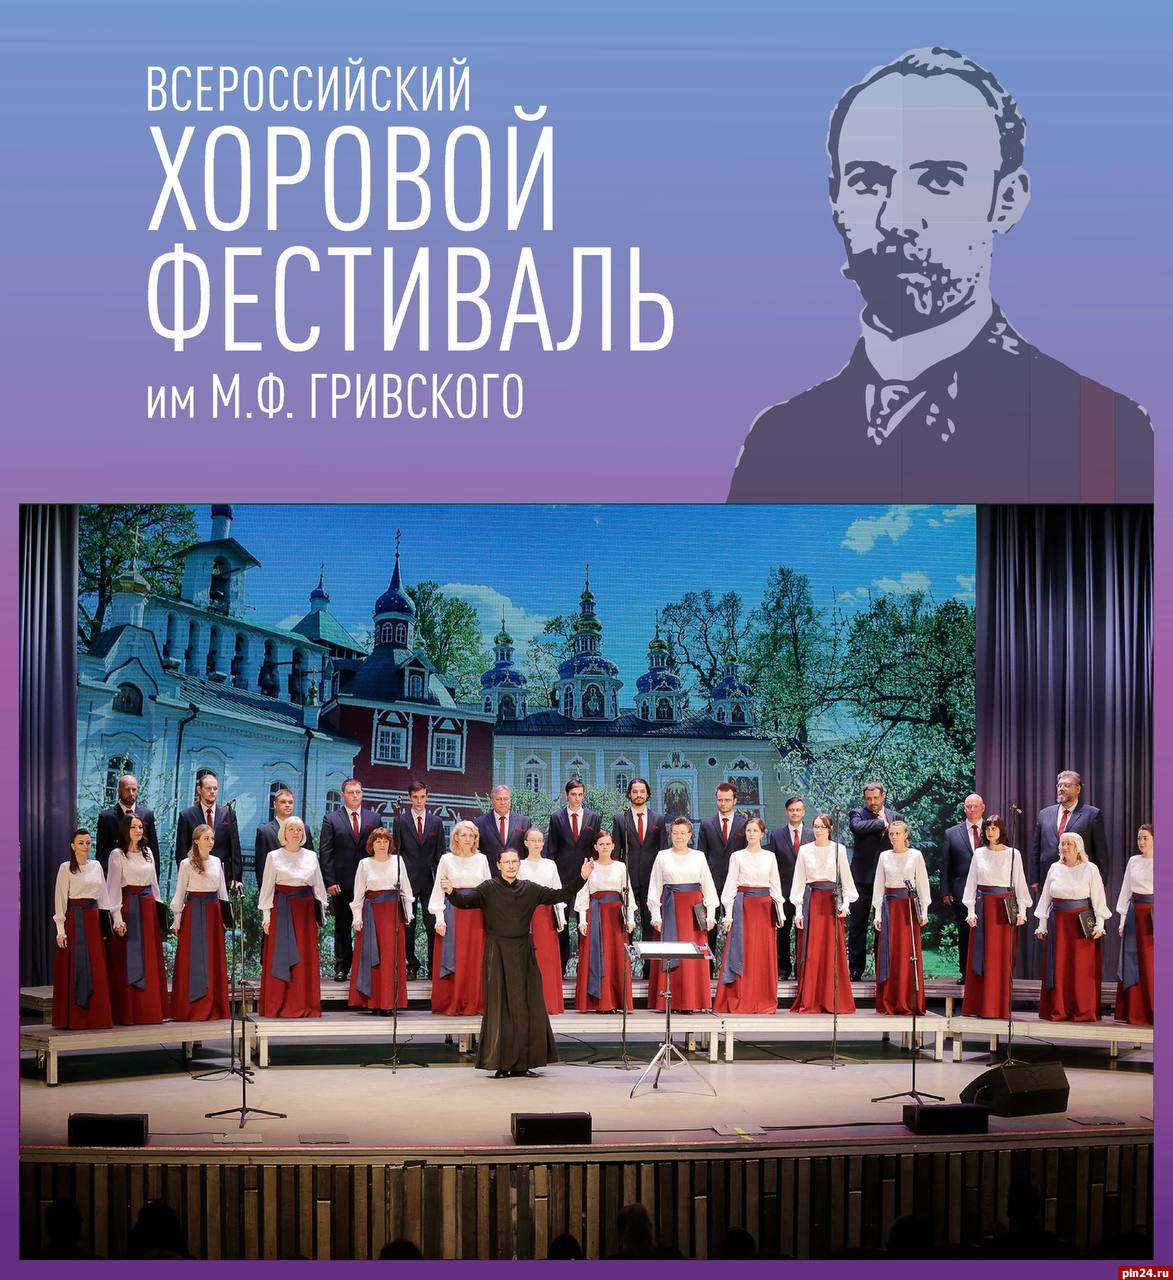 Всероссийский хоровой фестиваль имени М. Ф. Гривского станет темой брифинга в пресс-центре ПЛН